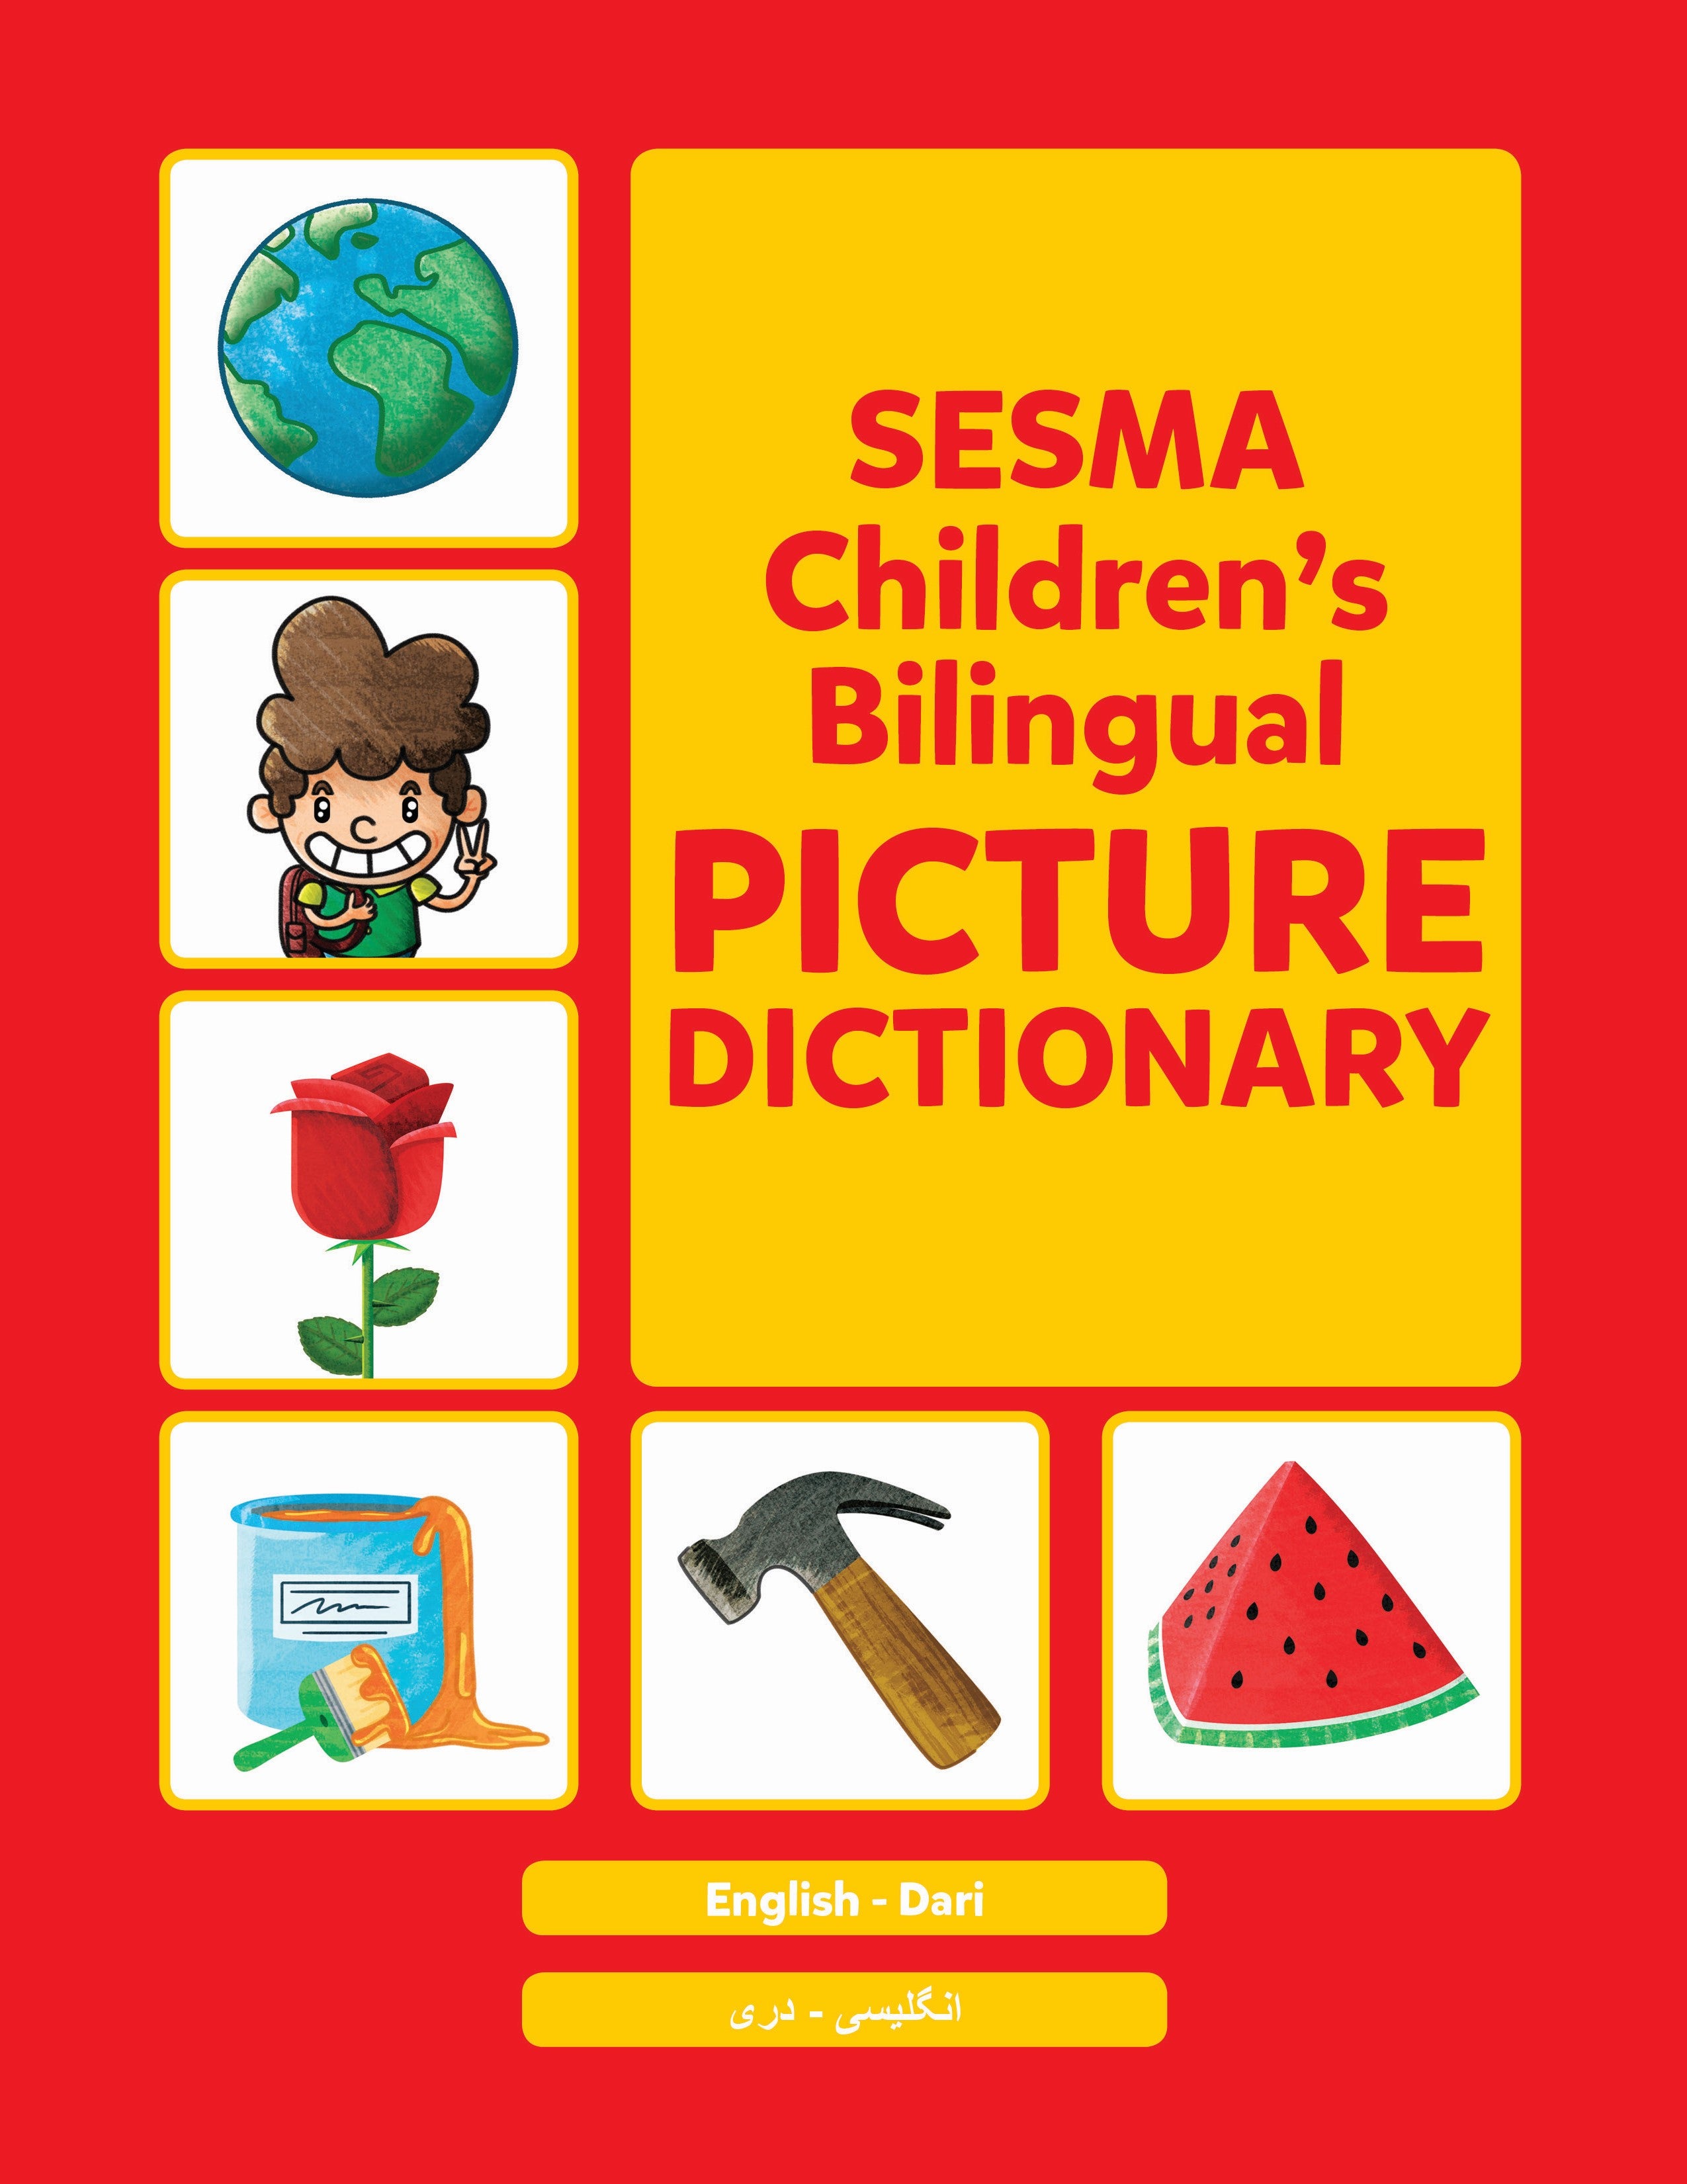 Dari-English Sesma Children's Bilingual Picture Dictionary